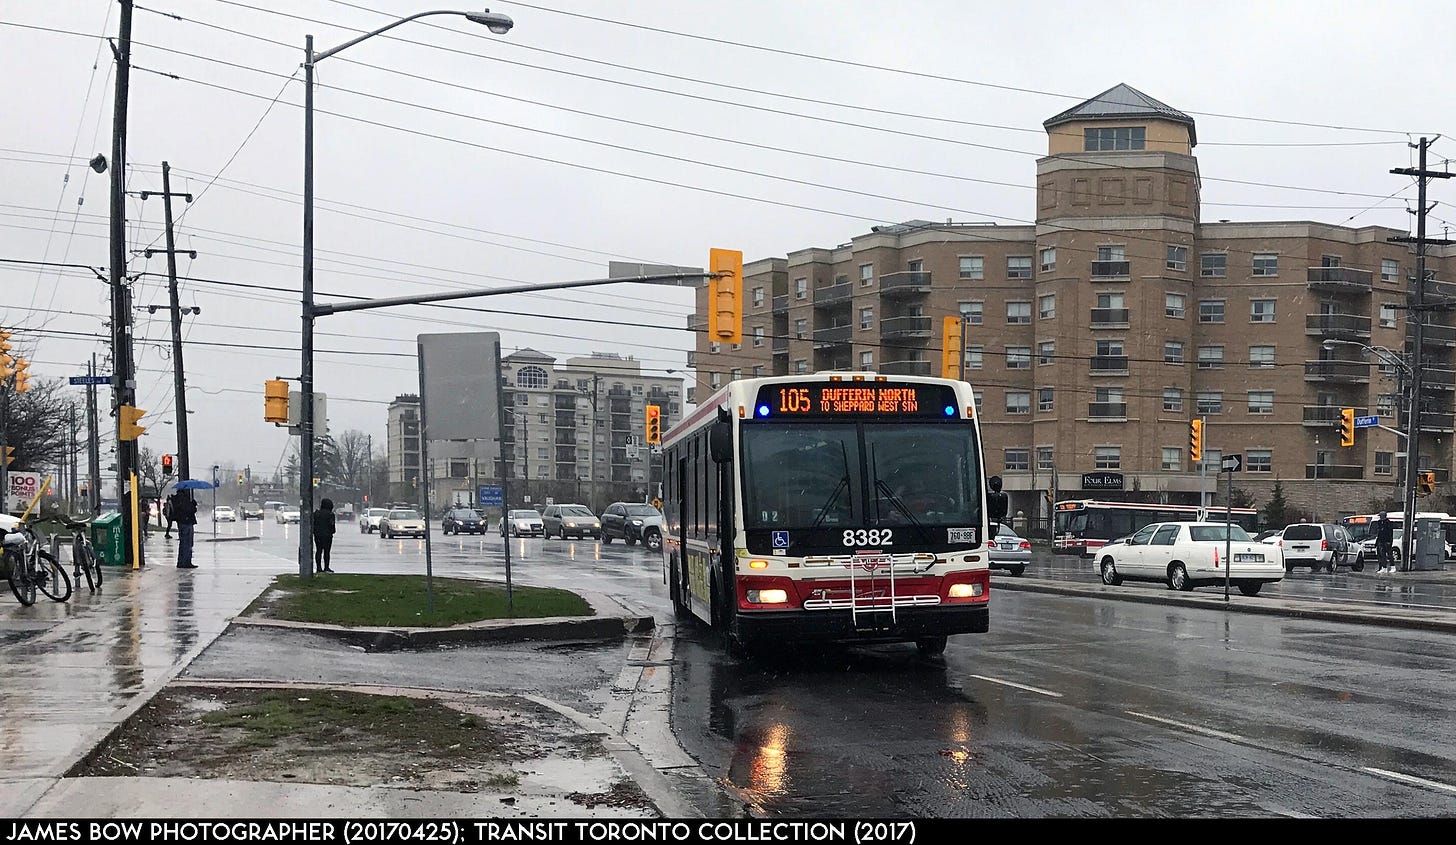 Transit Toronto Image: TTC 8382 20170425